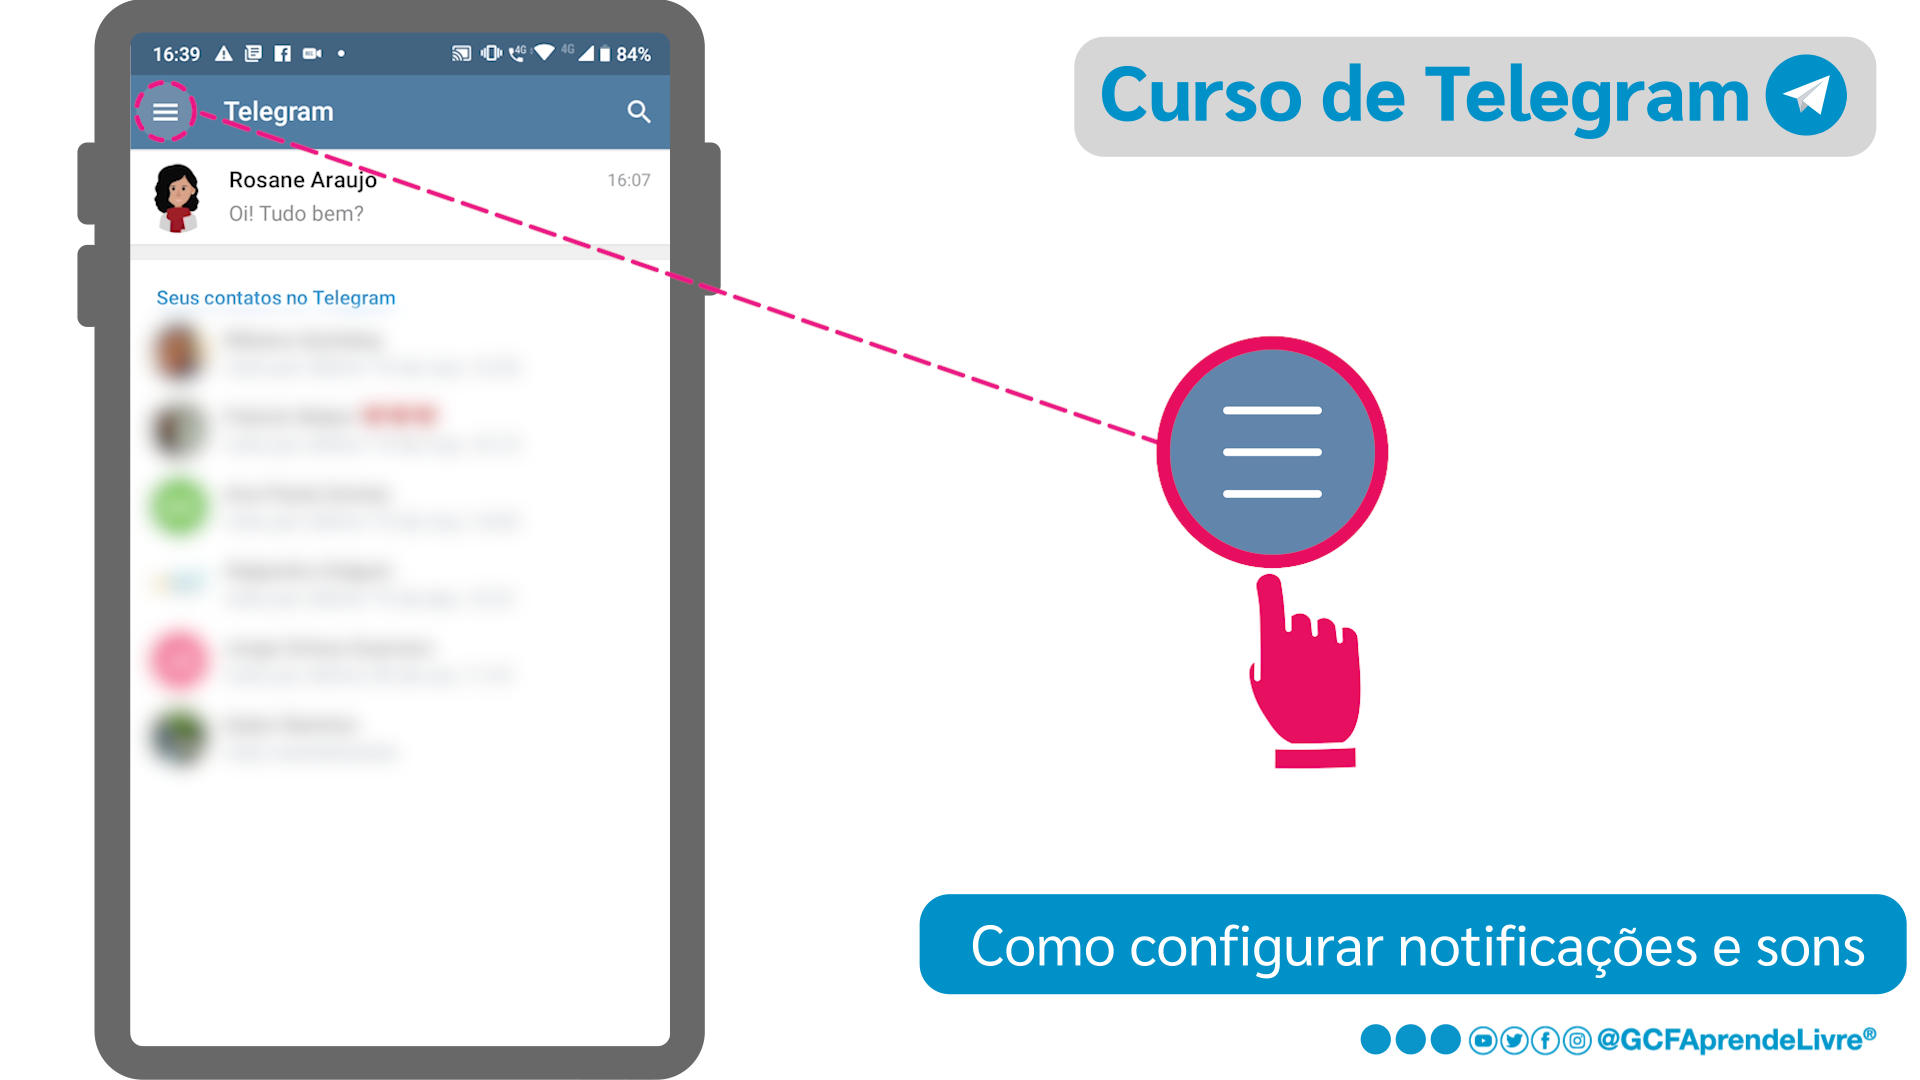 Como configurar notificações e sons do Telegram: passo 1